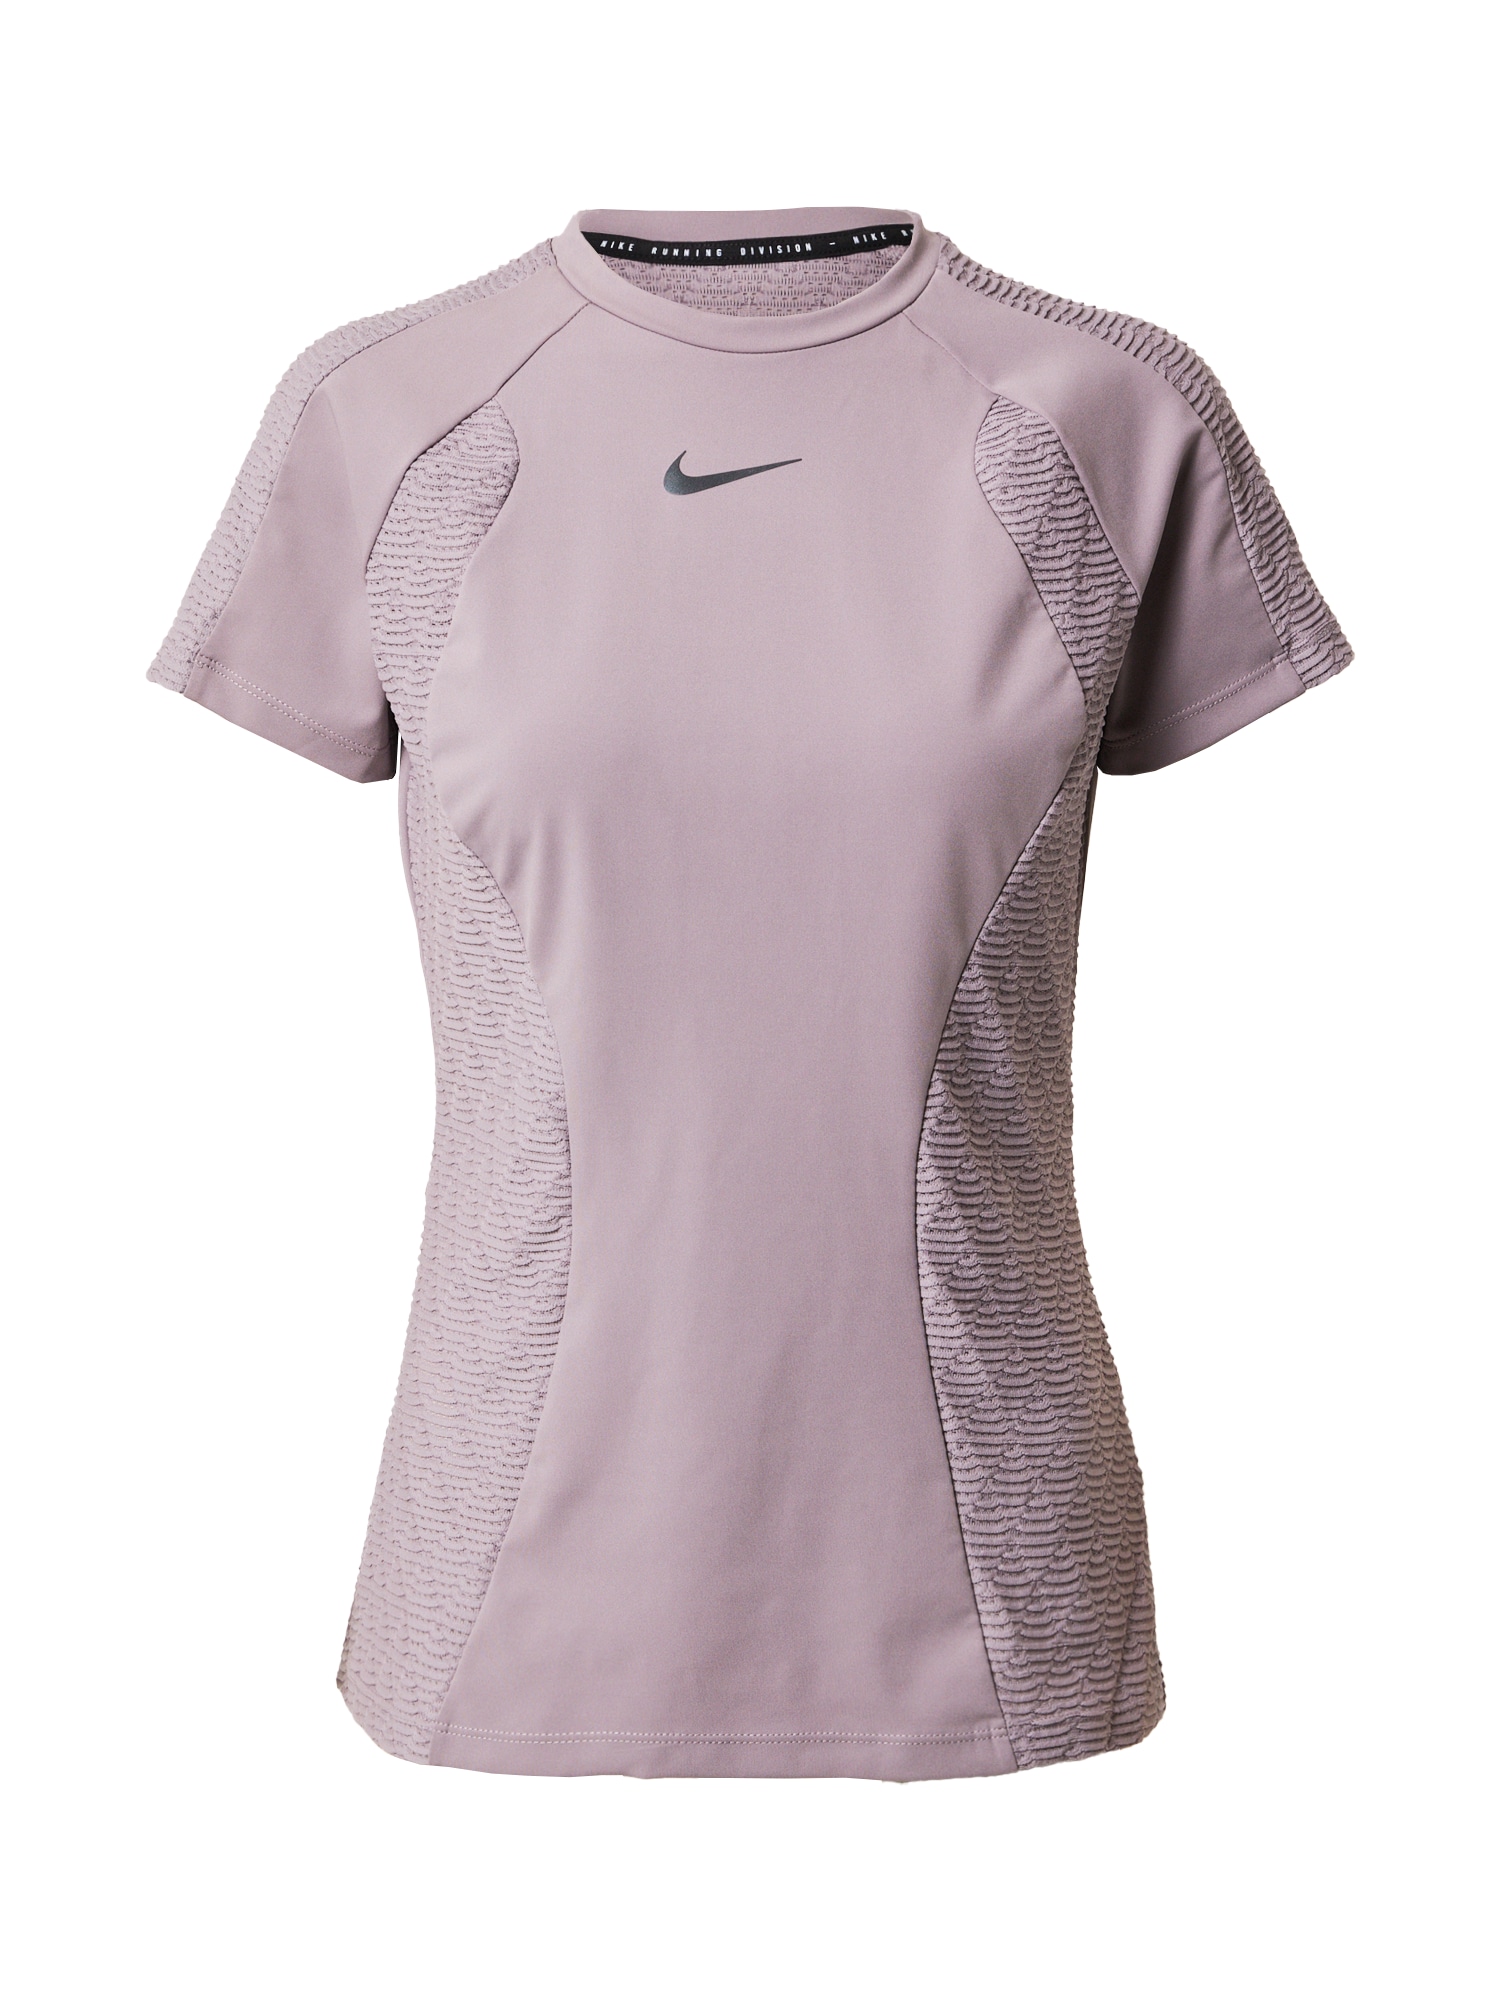 Funkční tričko Nike antracitová / bledě fialová